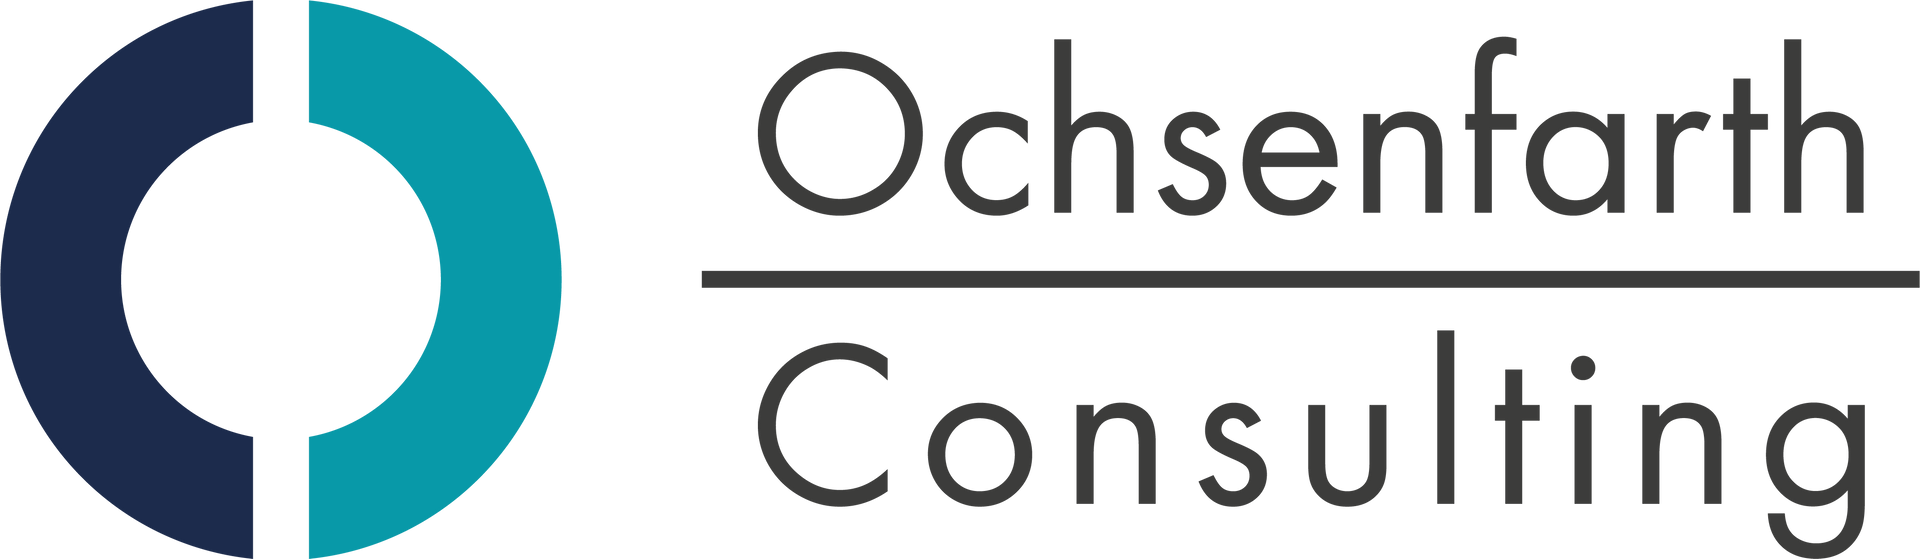 Logo Ochsenfarth Consulting